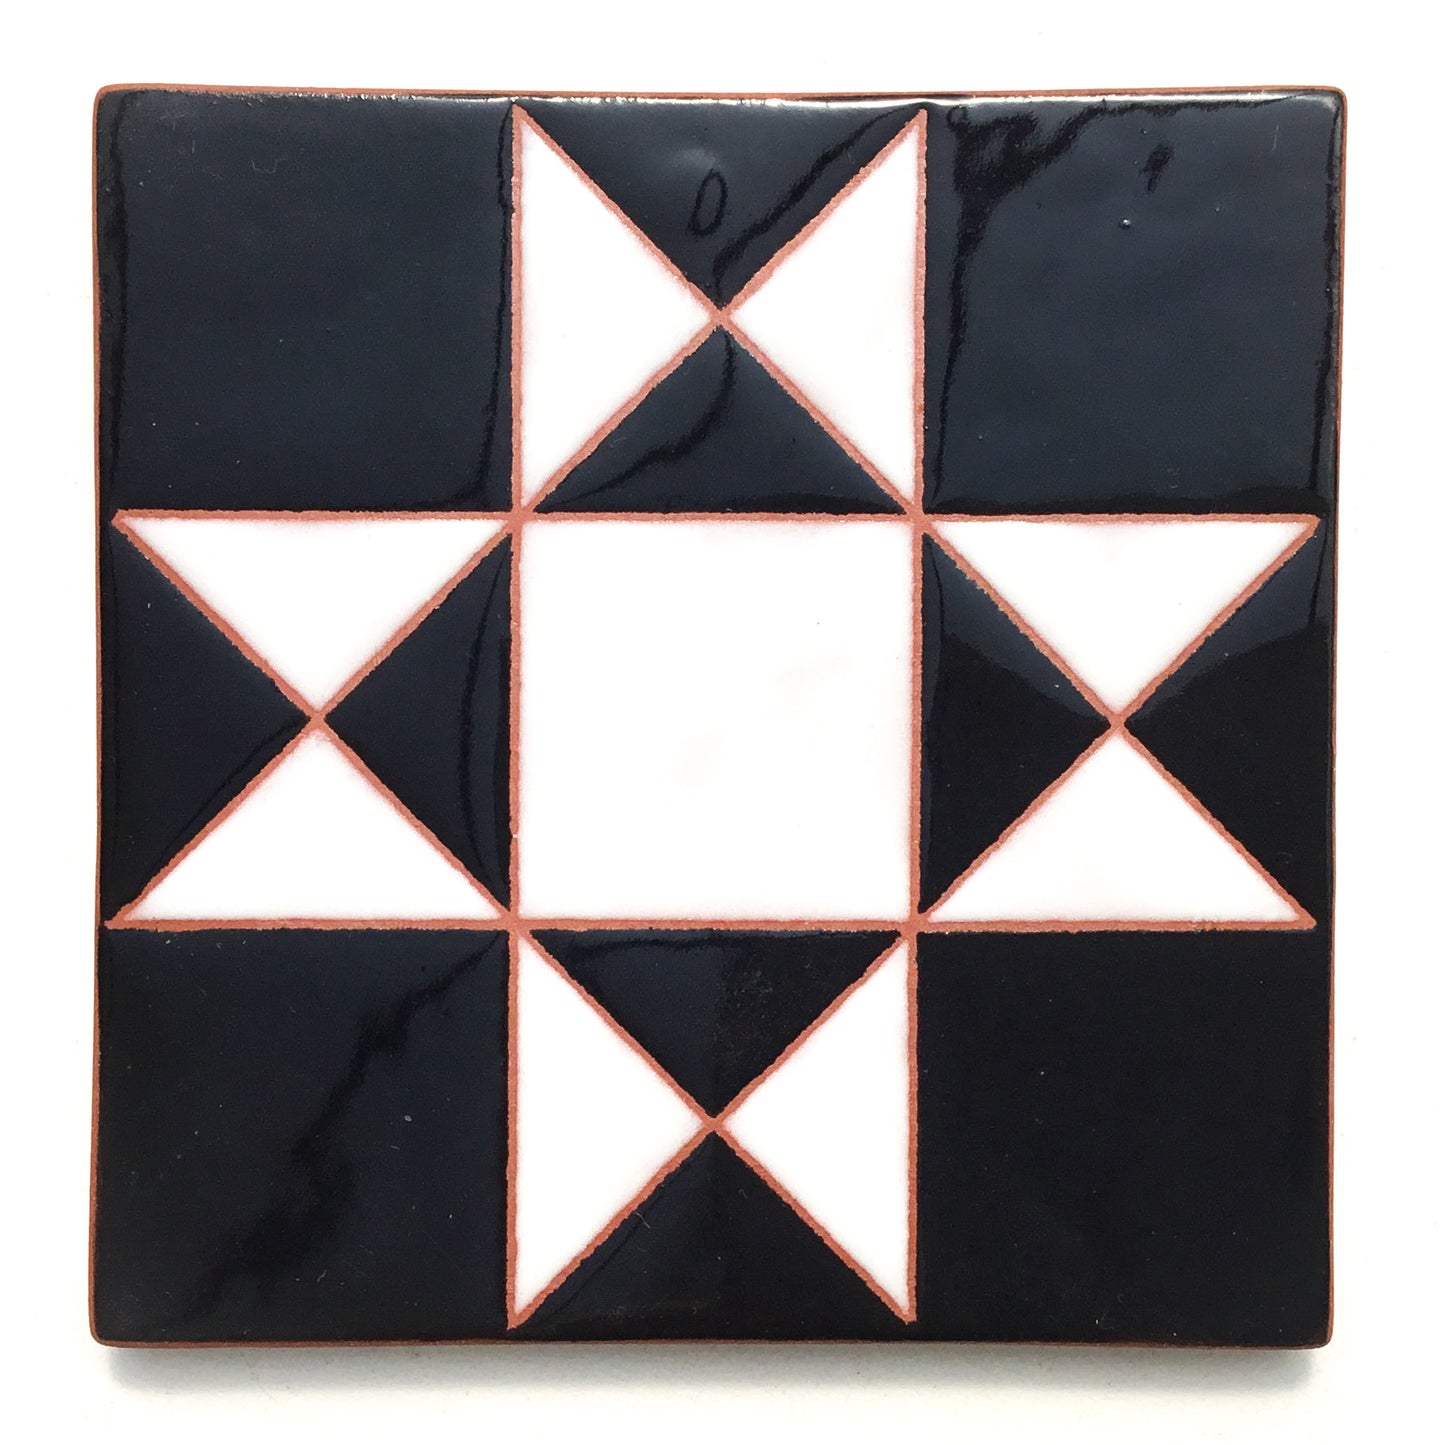 Ohio Star Quilt Block Coaster - Ceramic Art Tile #9